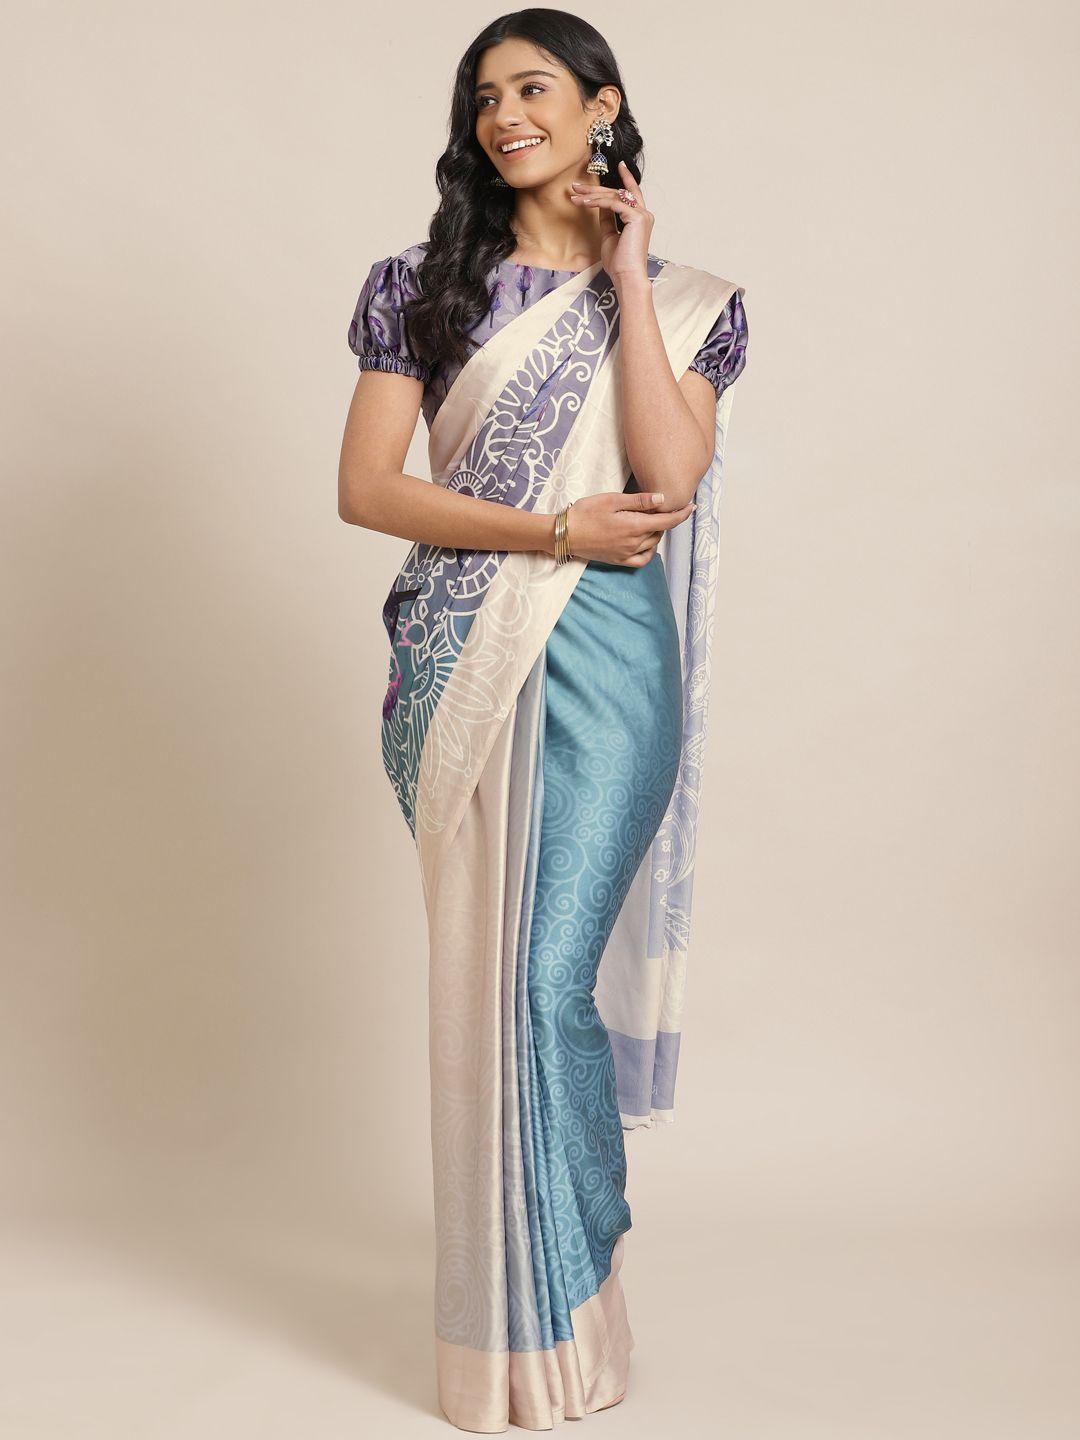 saree mall grey & blue printed saree with satin finish